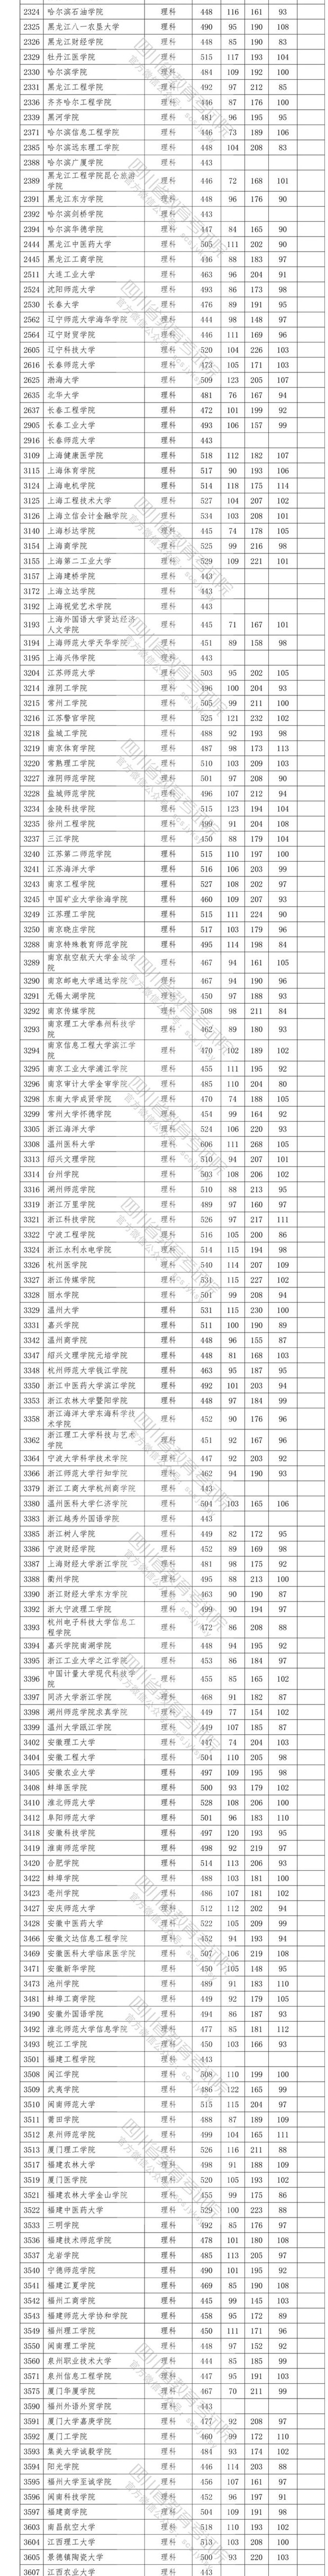 2020四川高考省内二本投档分数线及院校代码一览表